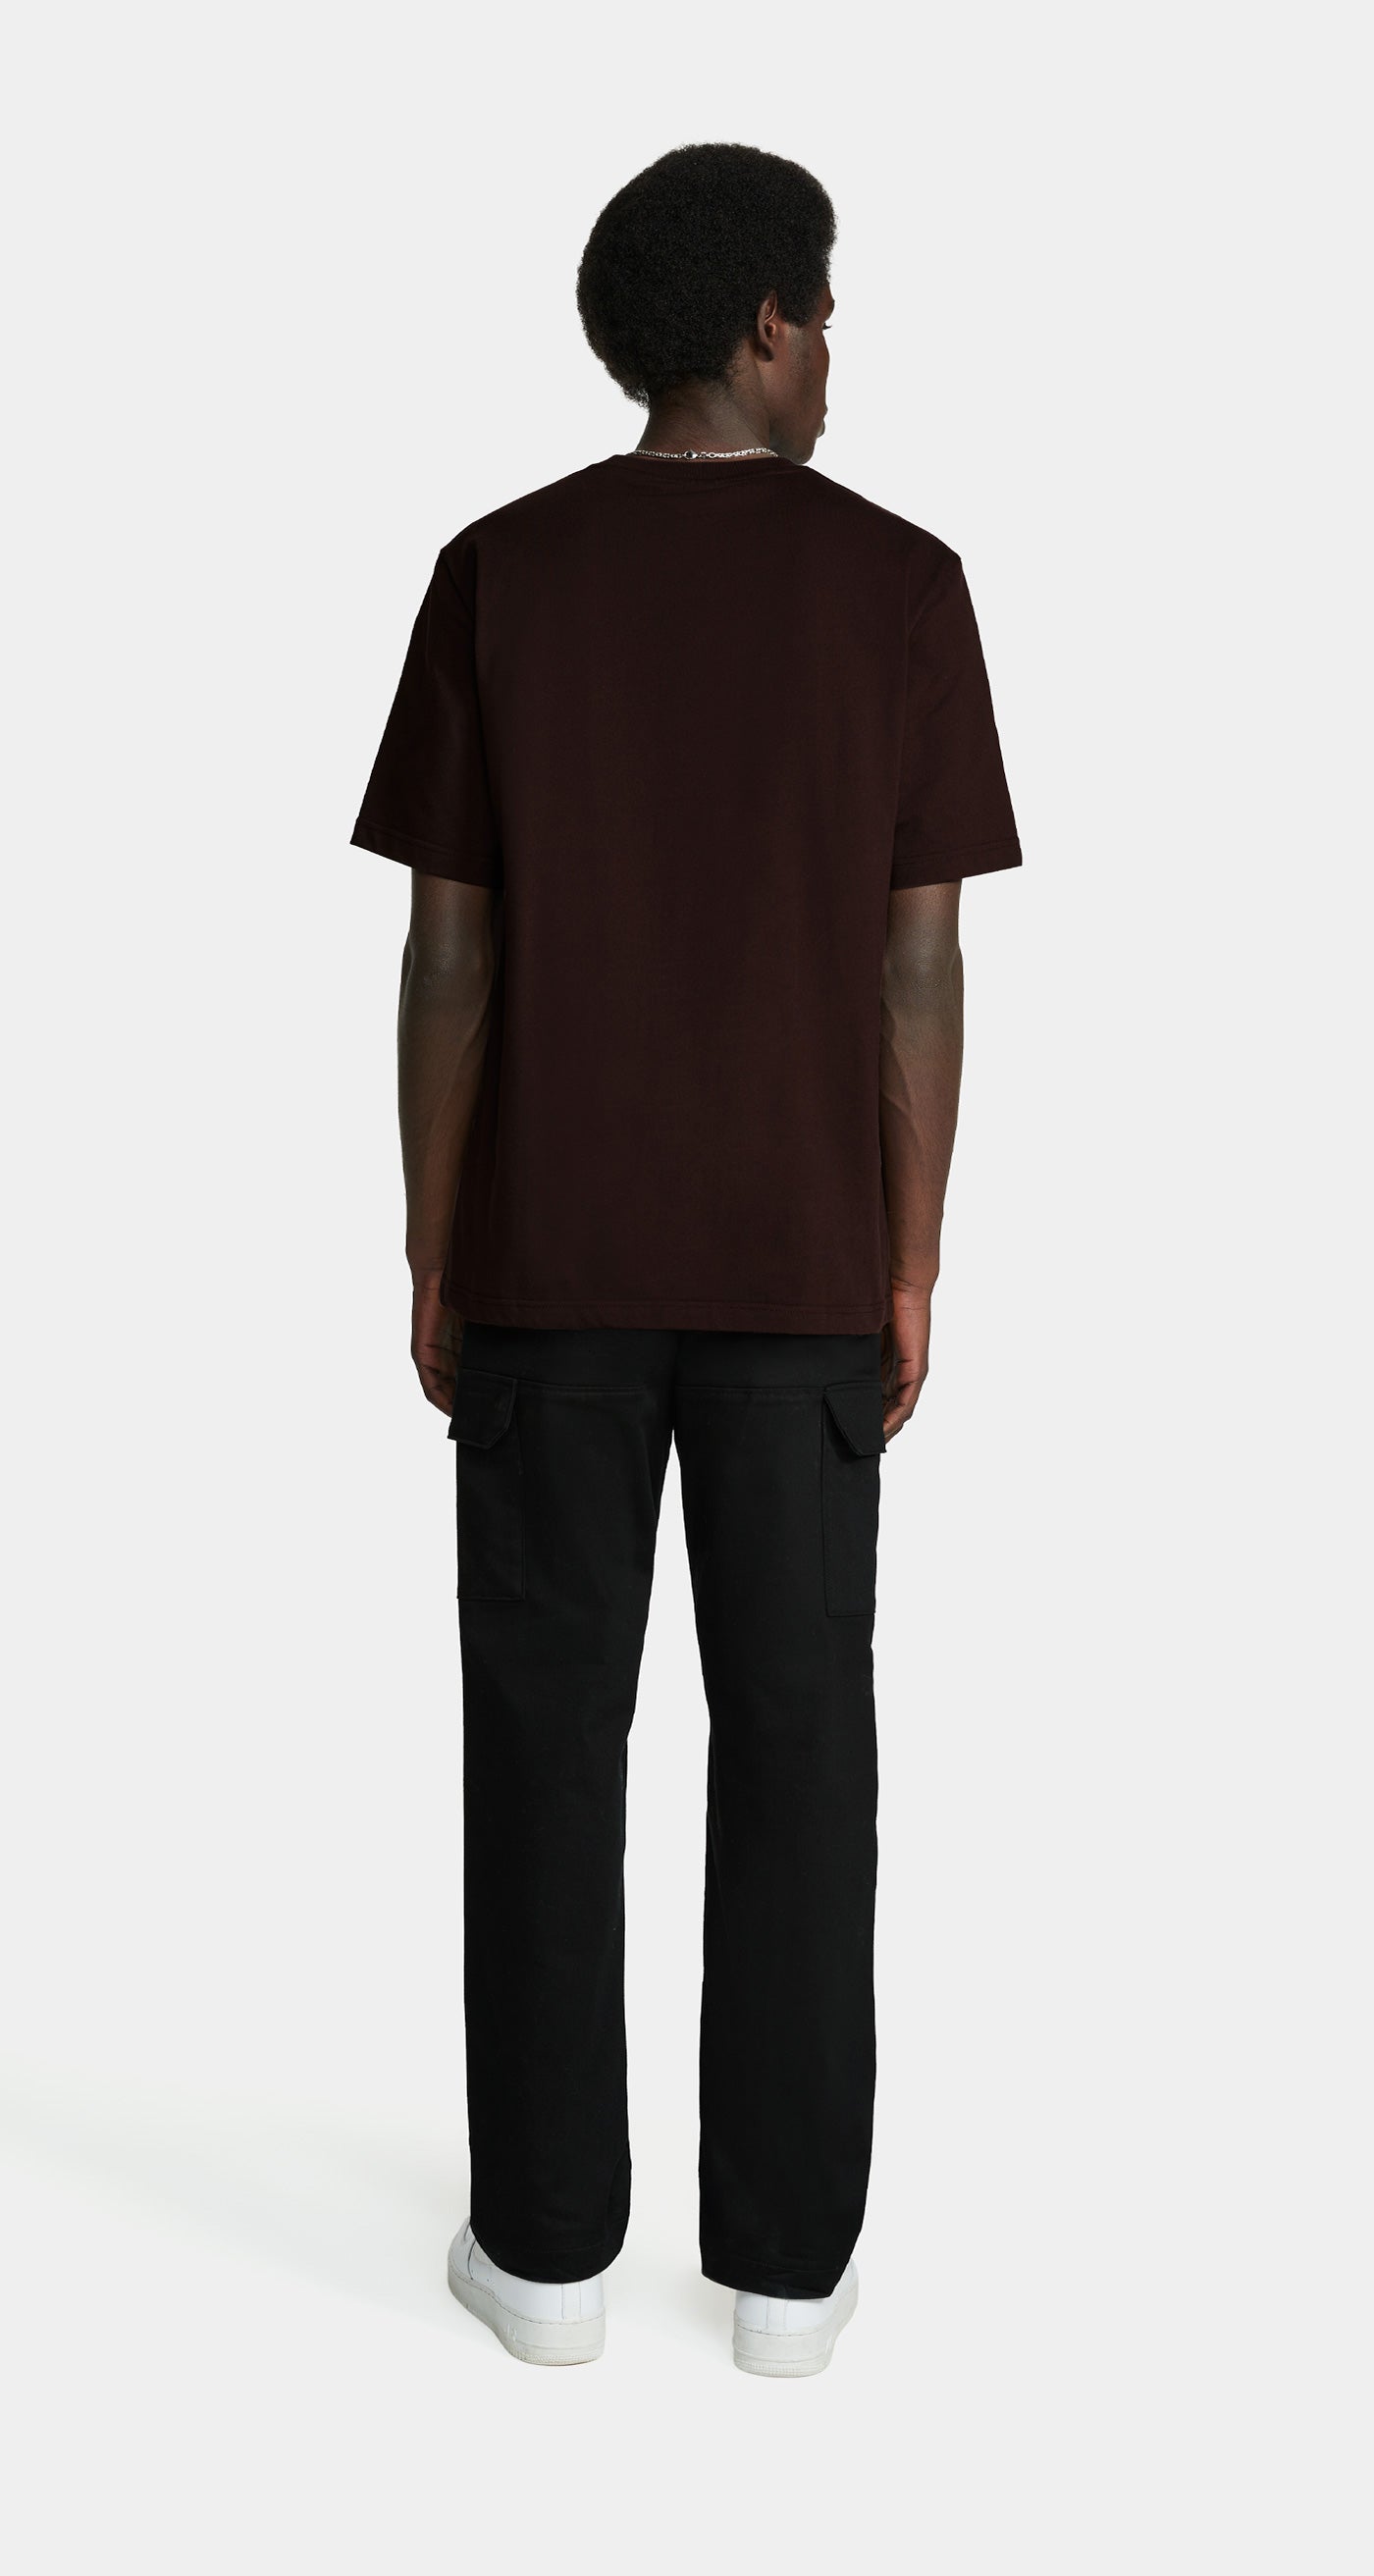 DP - Syrup Brown Etype T-Shirt - Men - Rear